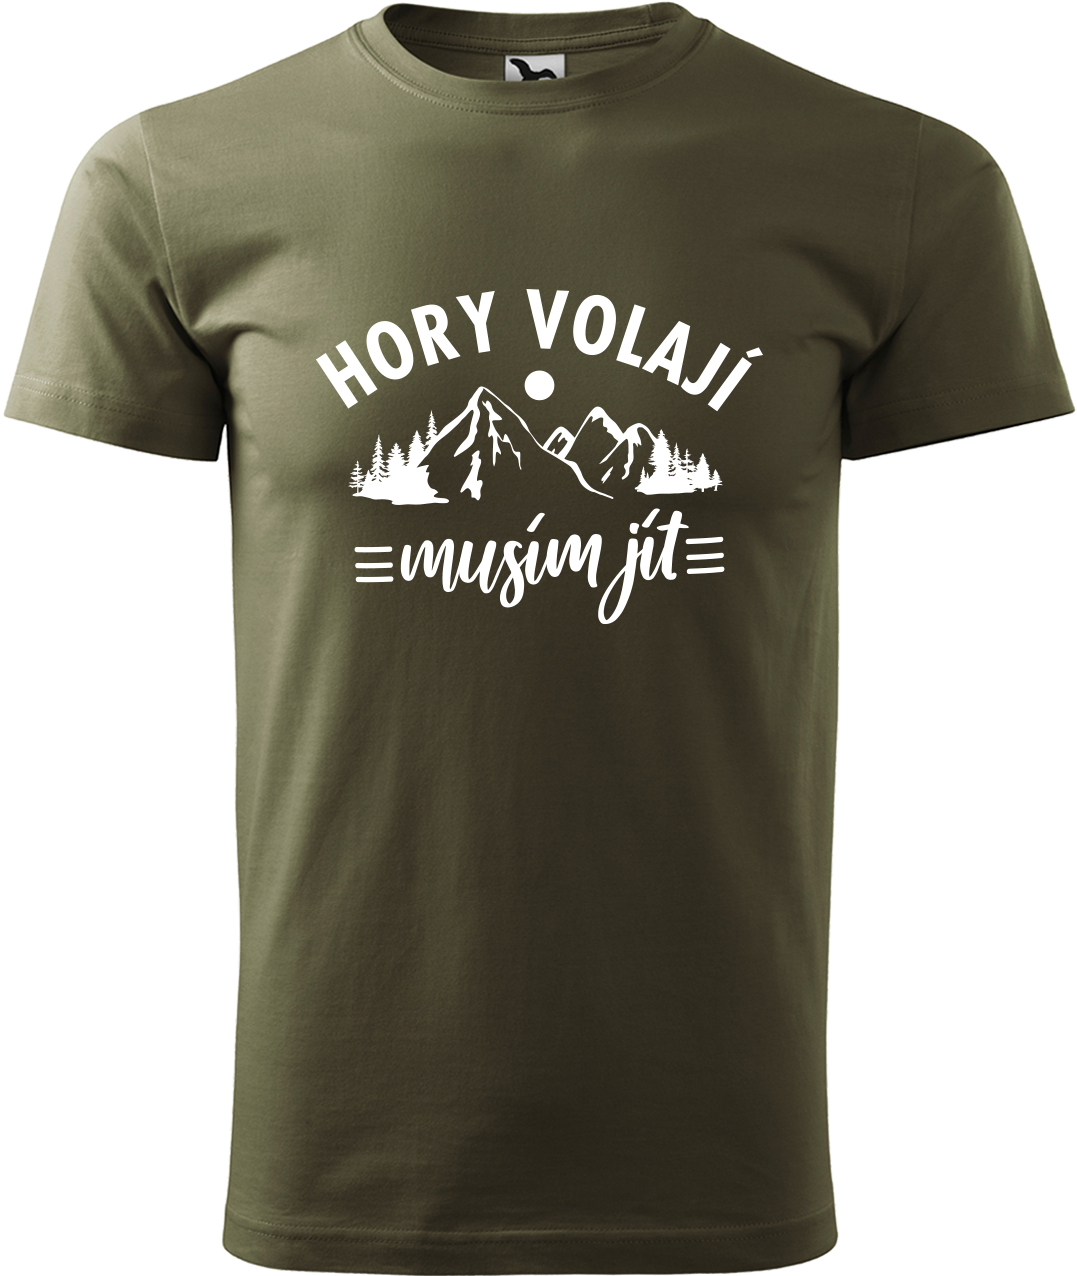 Pánské tričko na hory - Hory volají, musím jít Velikost: 2XL, Barva: Military (69), Střih: pánský